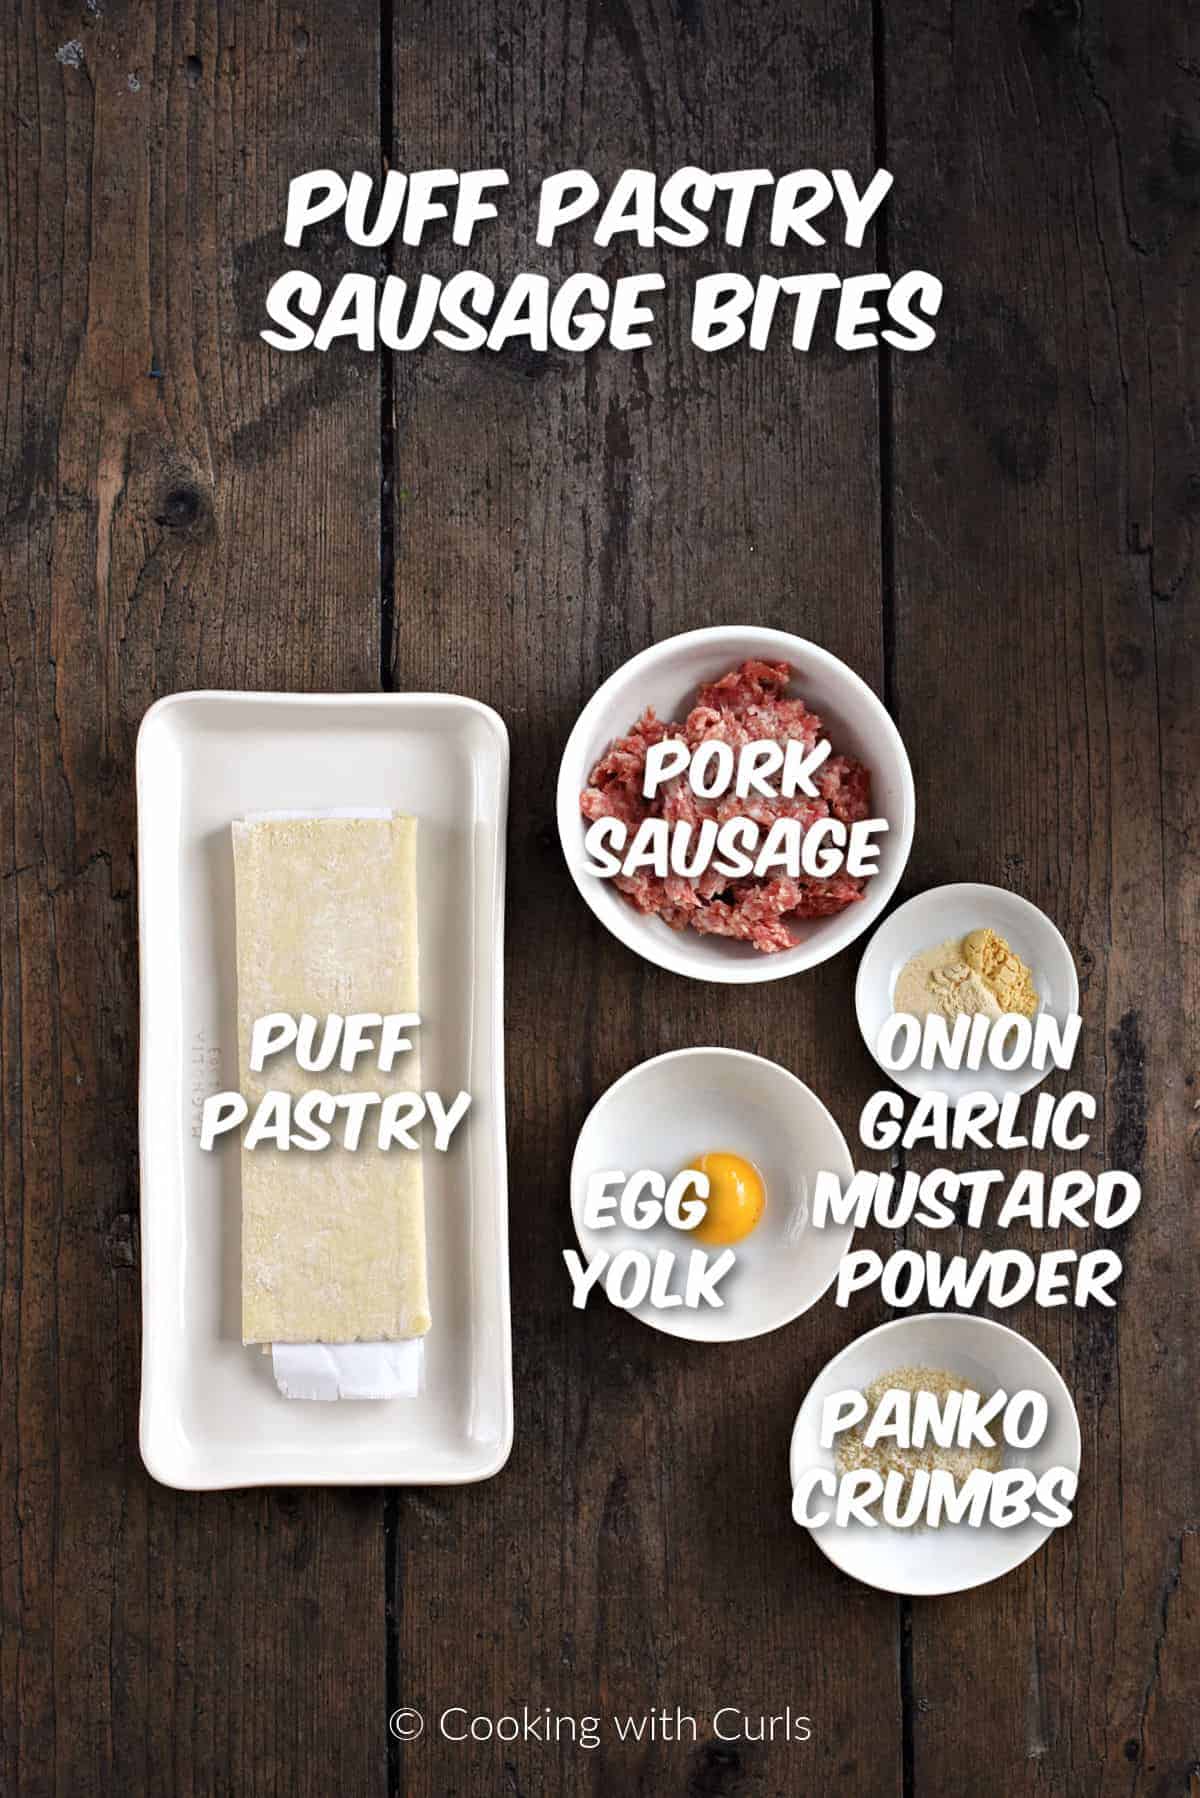 Ingredients to make puff pastry sausage bites. 